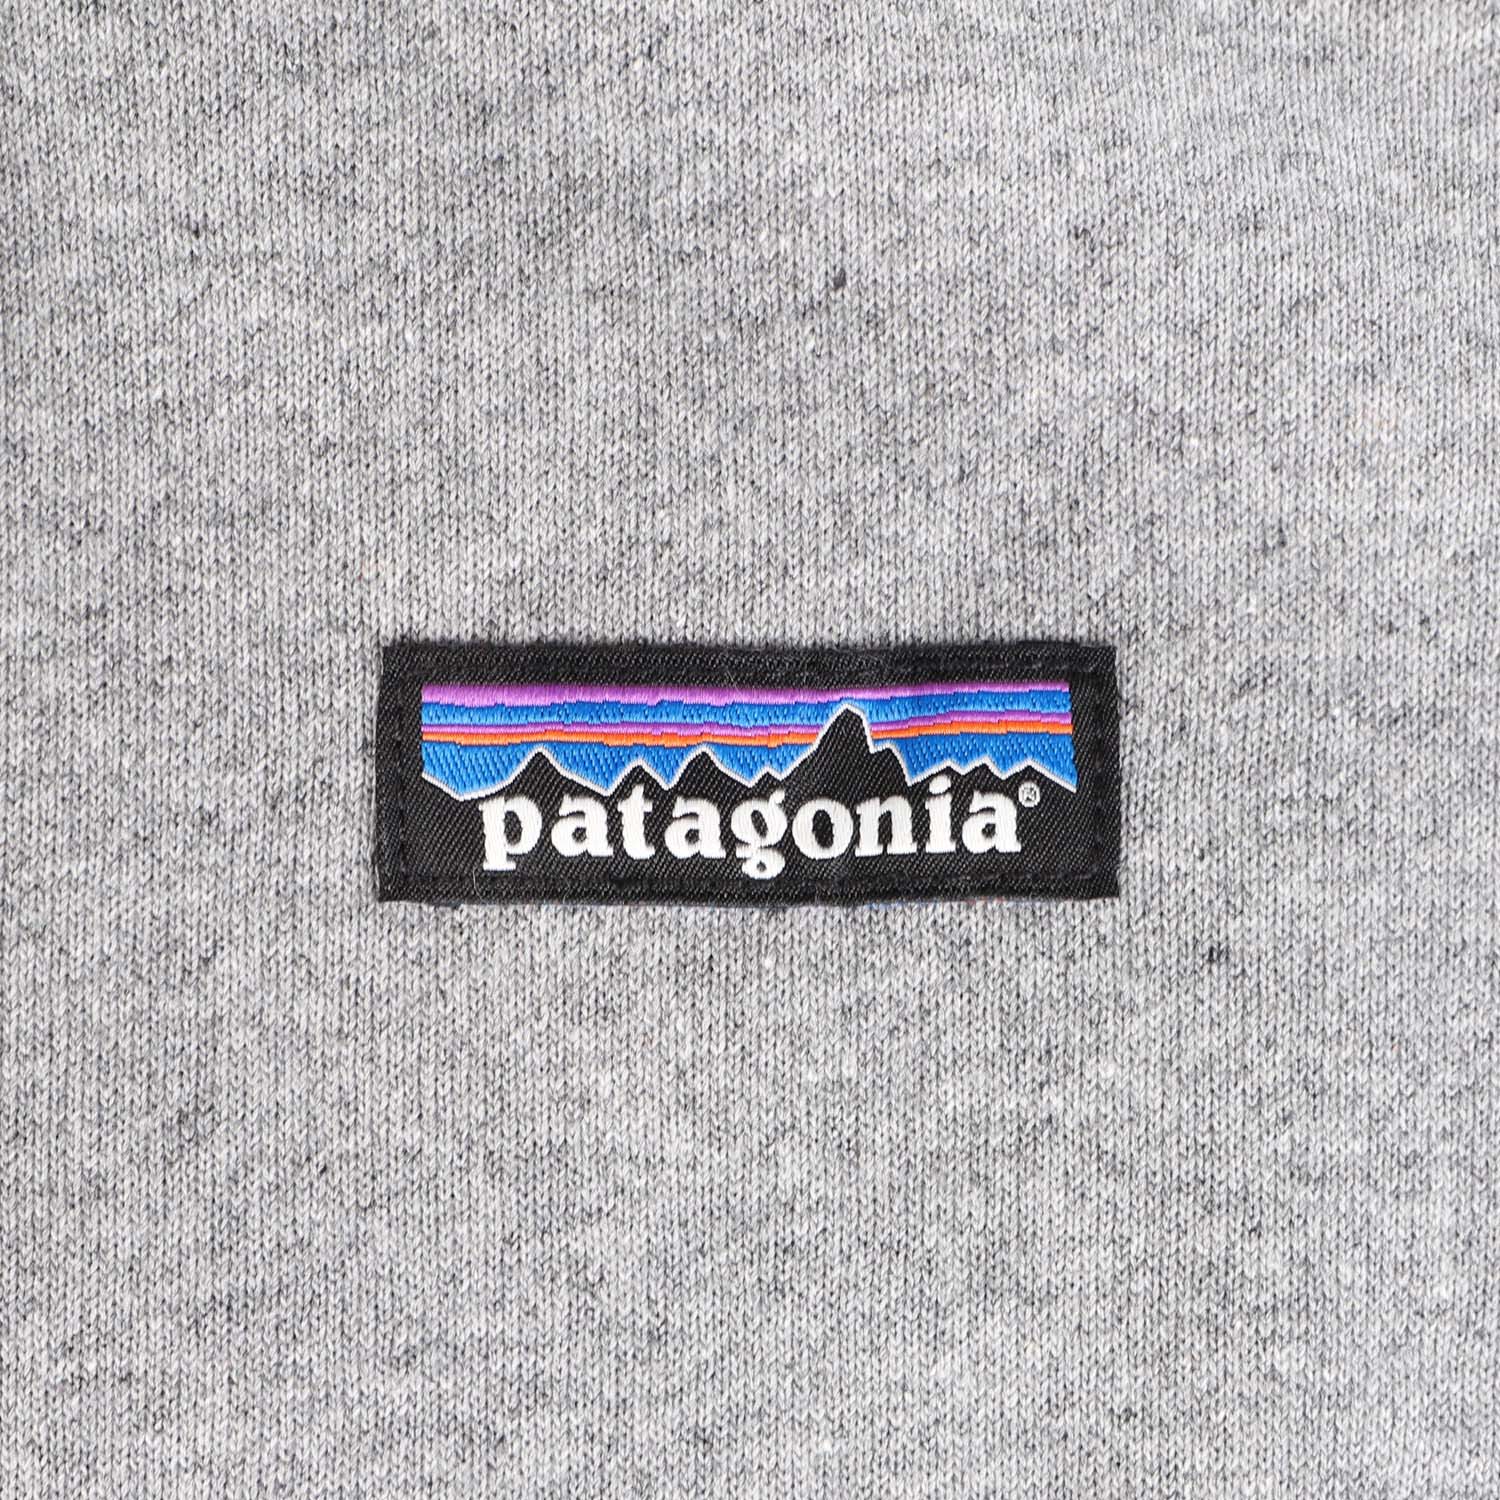 Patagonia P 6 Uprisal プルオーバー Label スウェット Hoody パーカー パタゴニア